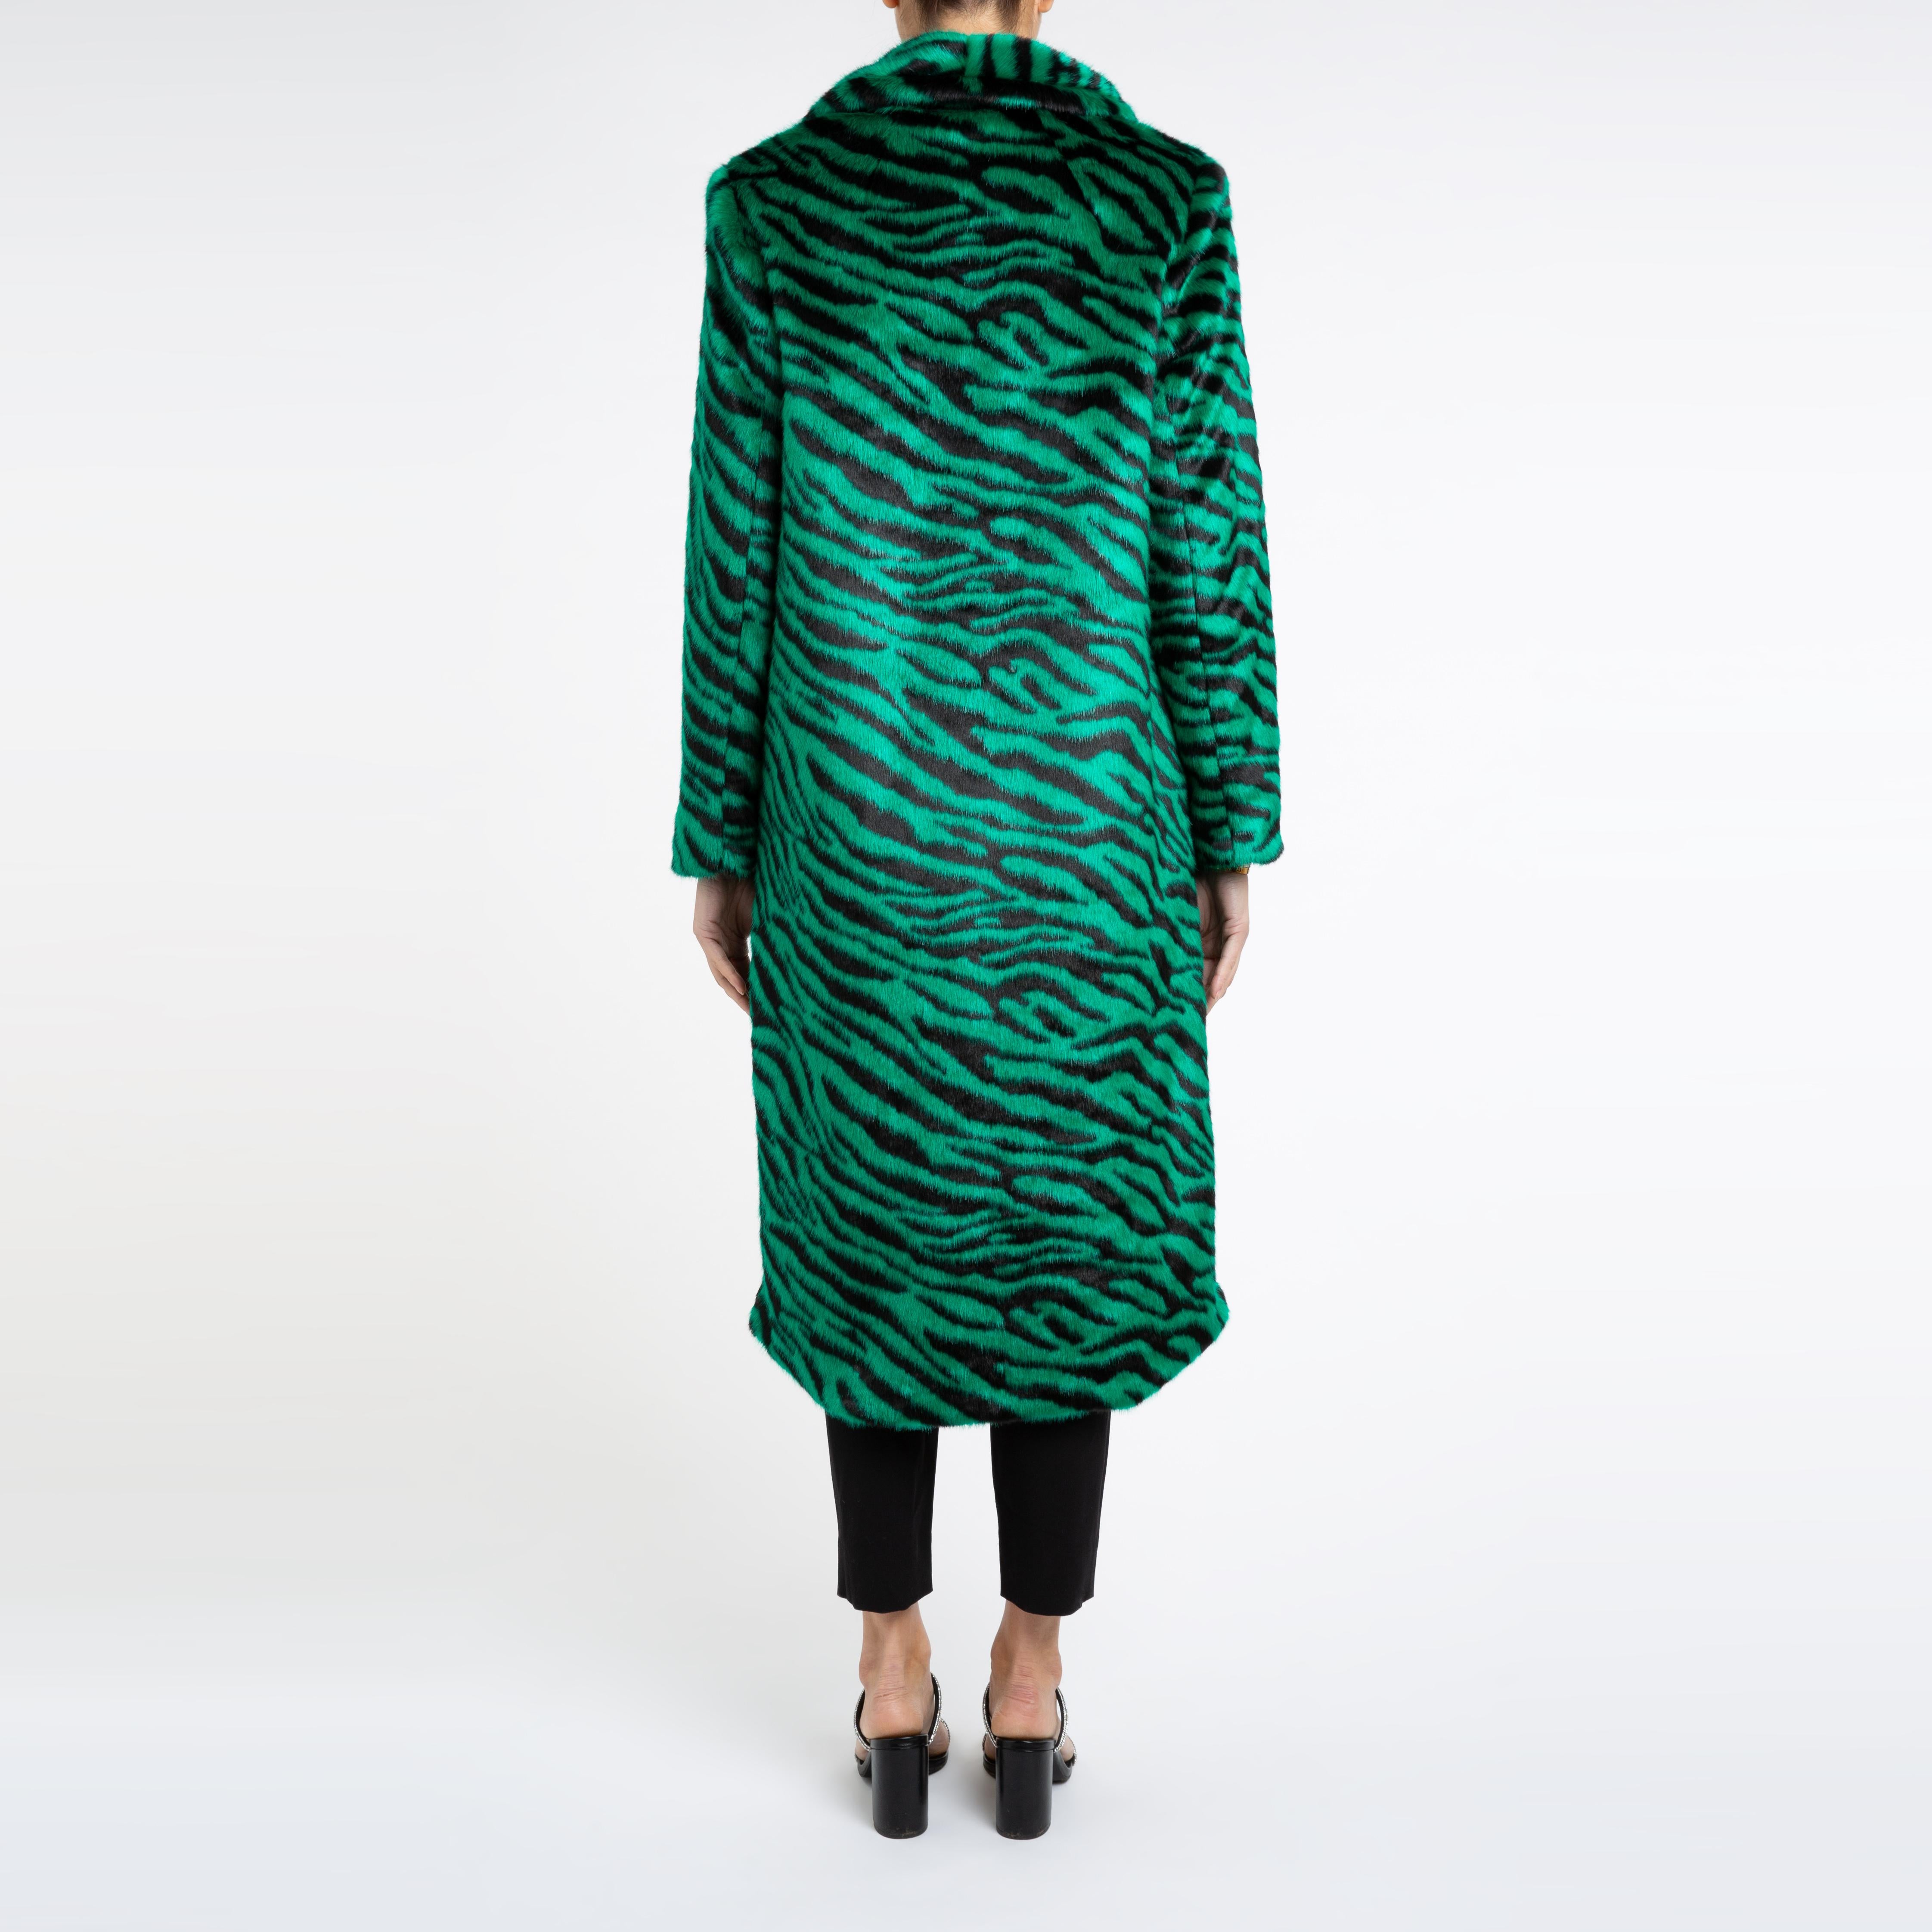 Verheyen London Manteau en fausse fourrure vert émeraude à imprimé zébré Esmeralda, taille UK 14 Pour femmes en vente